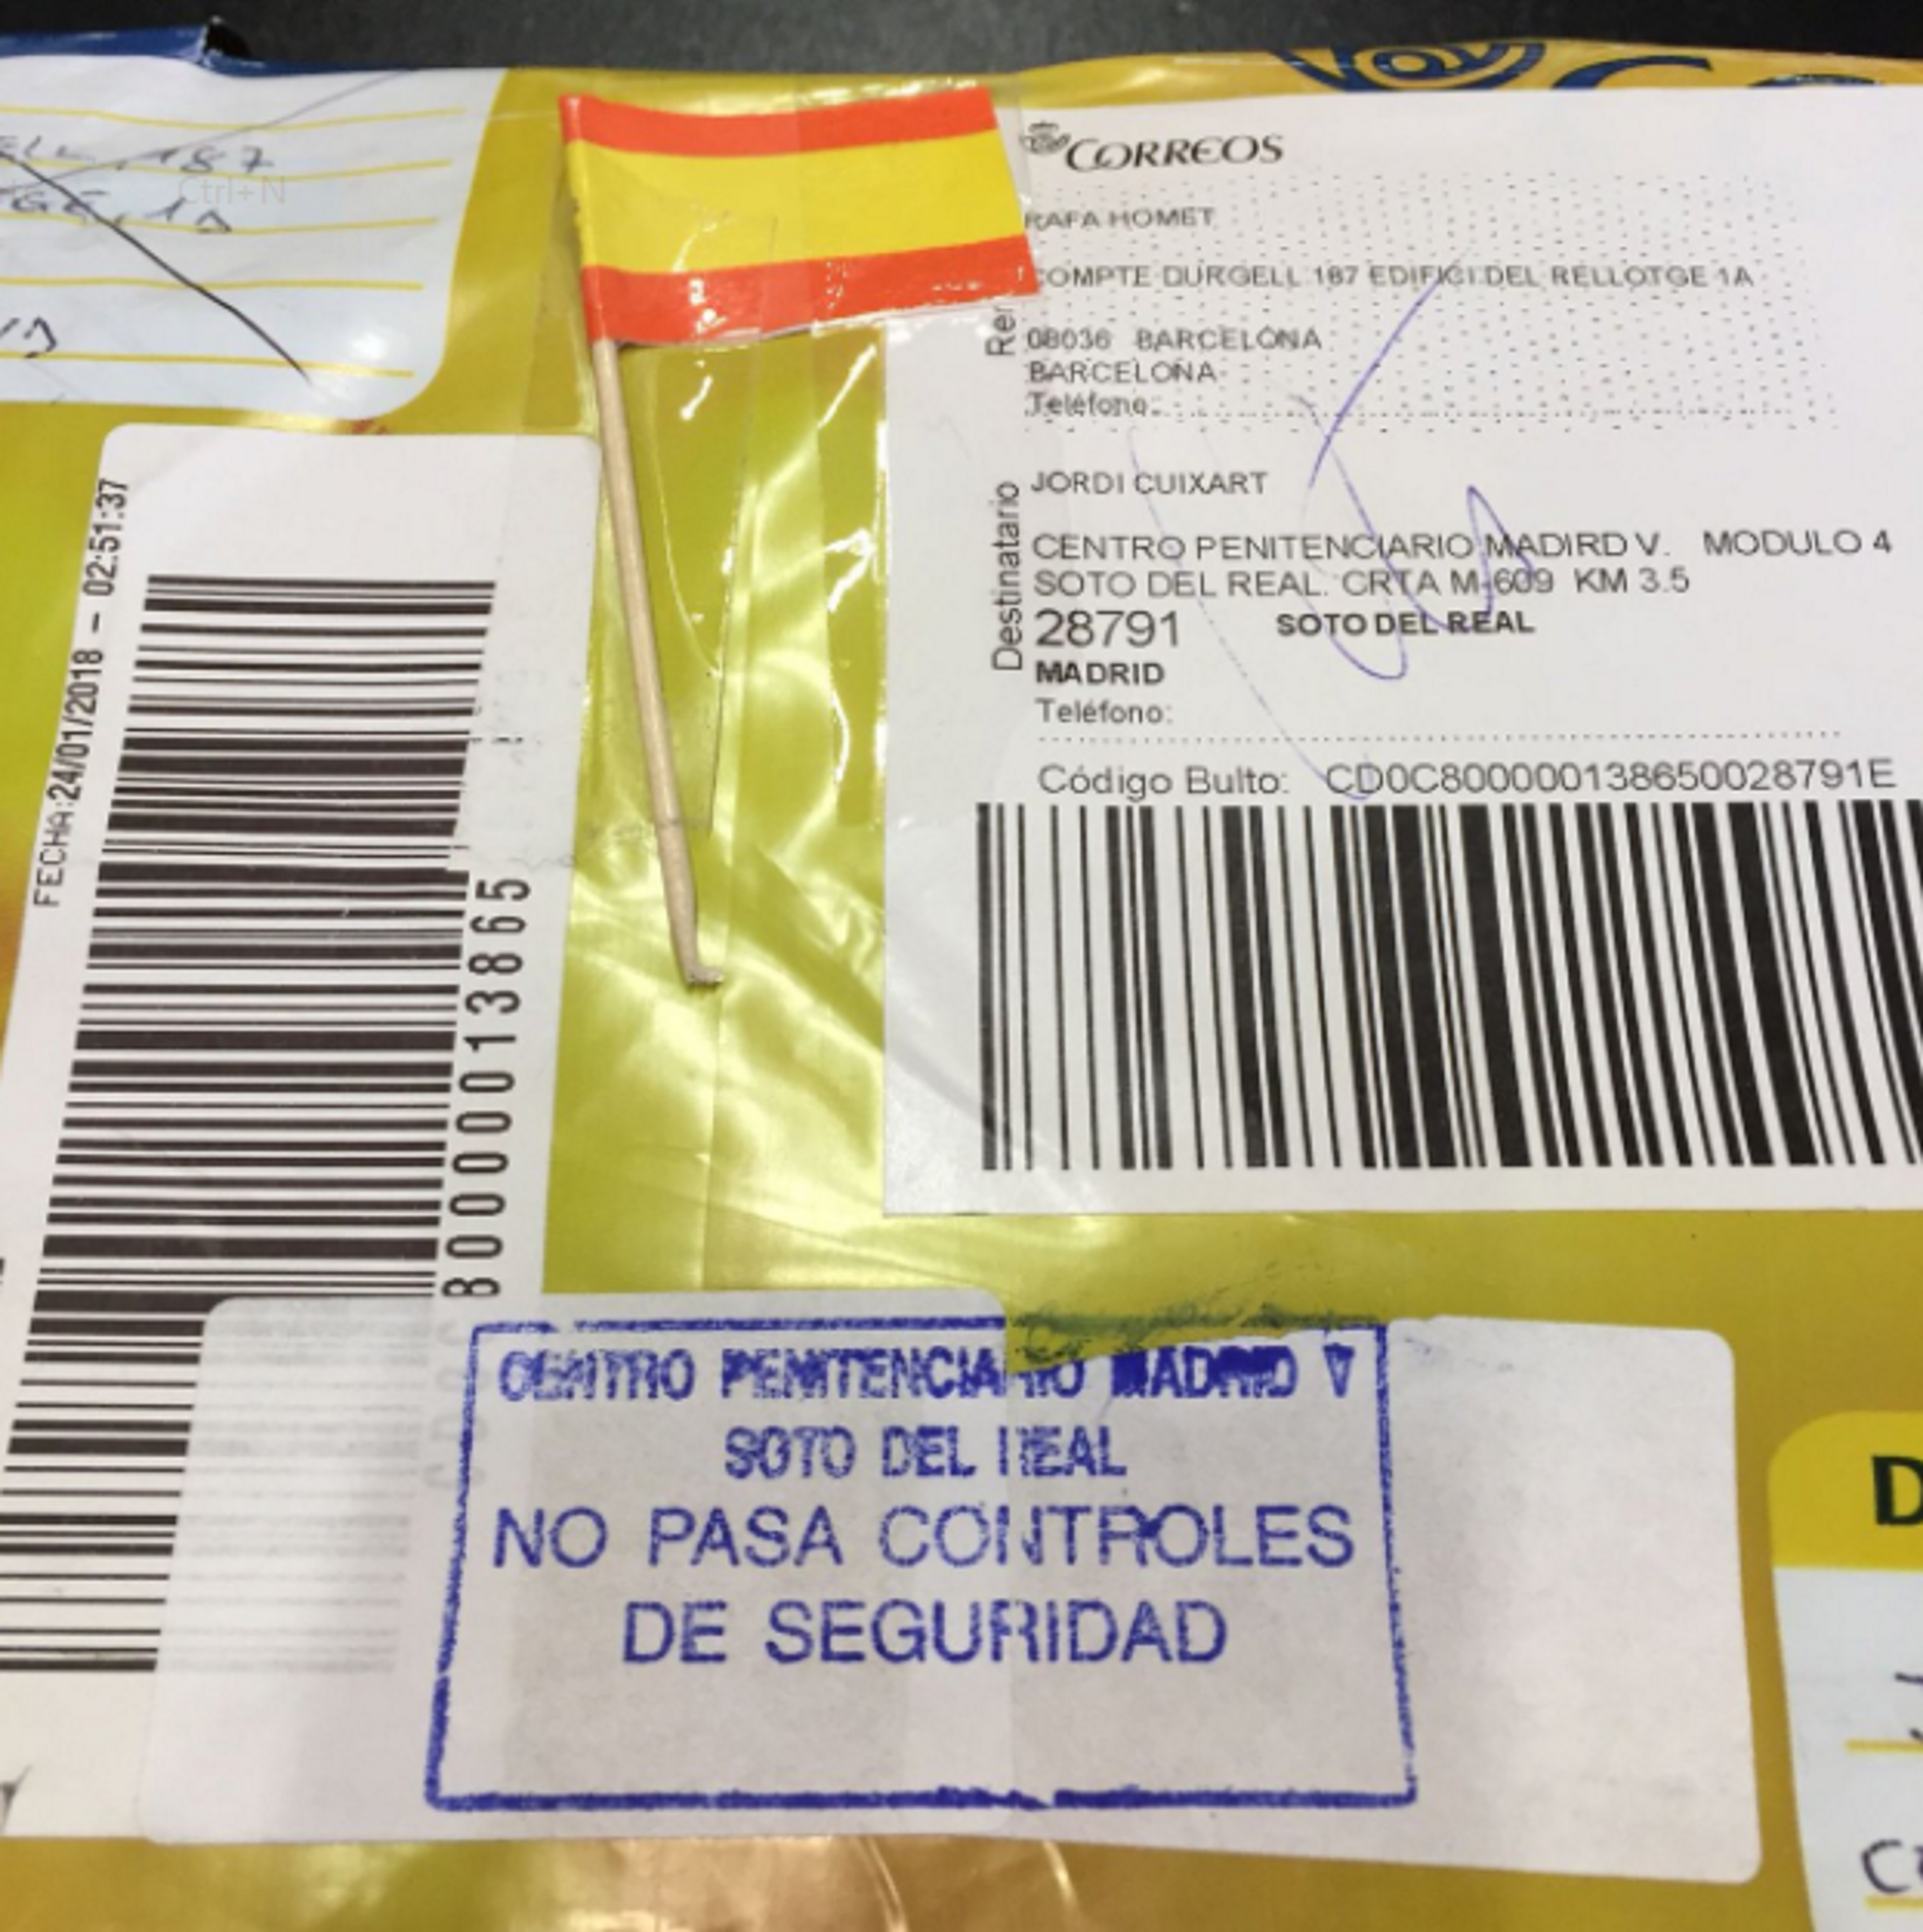 Veten un llibre enviat a Cuixart i el retornen amb una bandera espanyola